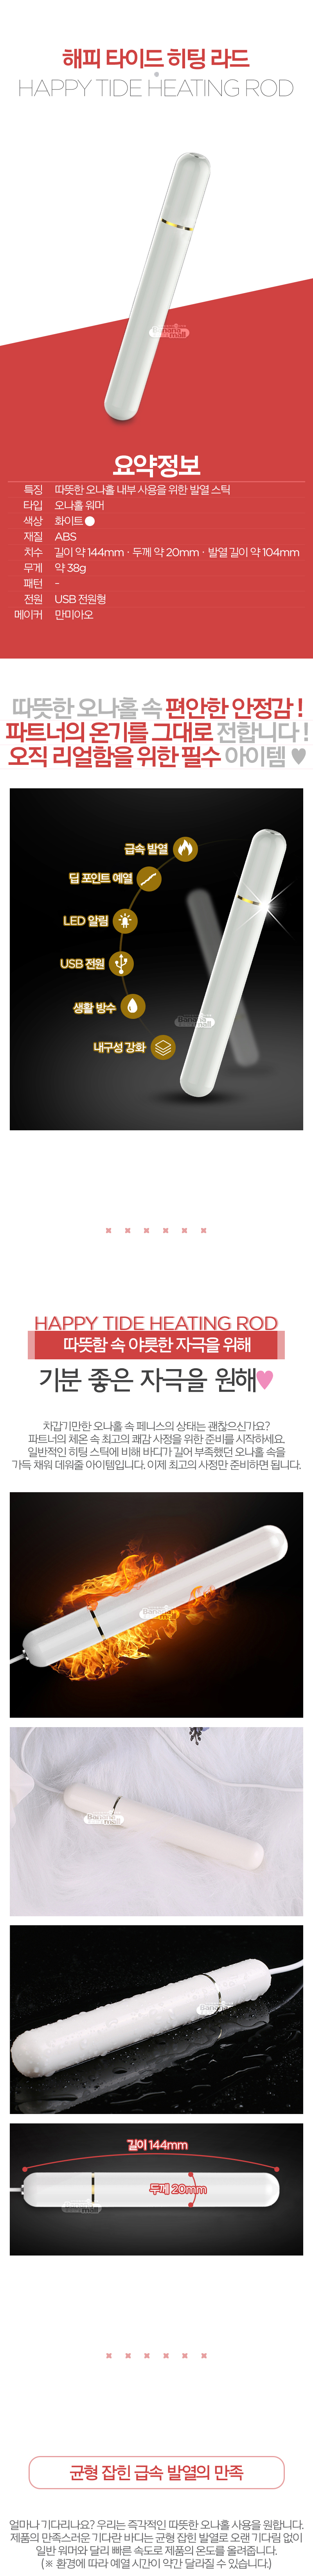 [발열봉] 해피 타이드 히팅 라드(Happy Tide Heating Rod)